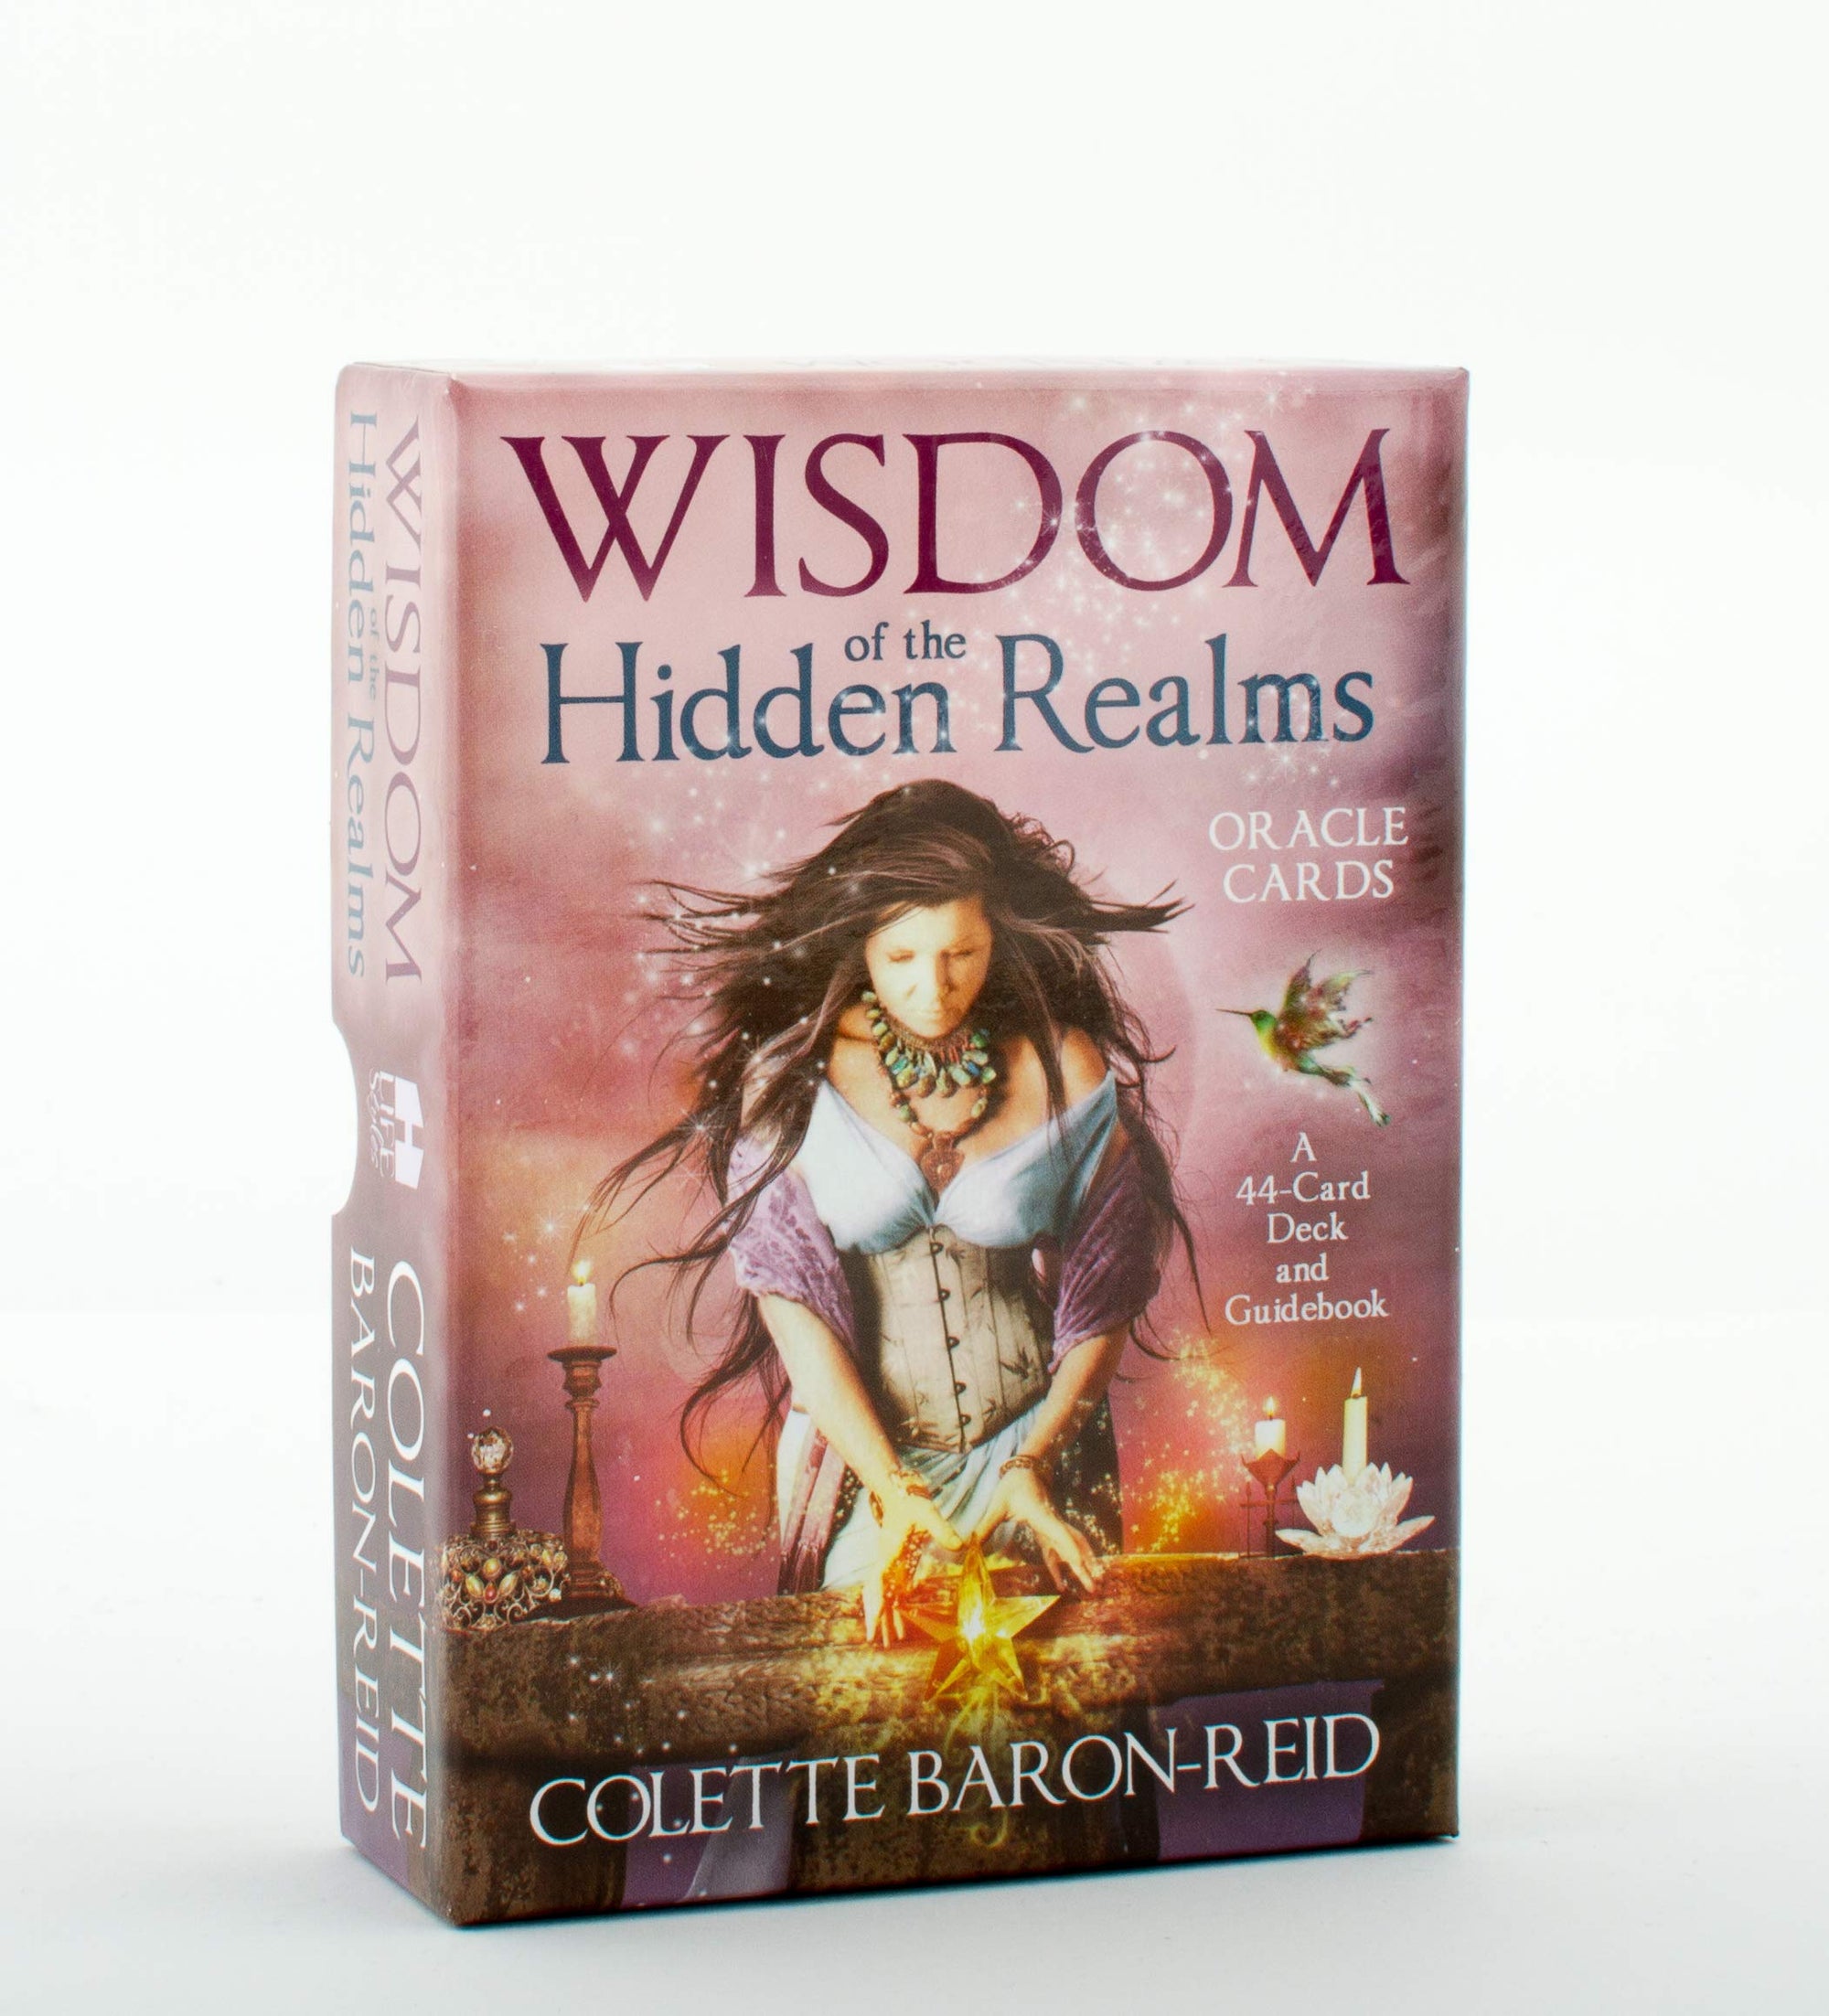 Wisdom of the Hidden Realms Deck & Guidebook || Colette Baron-Reid